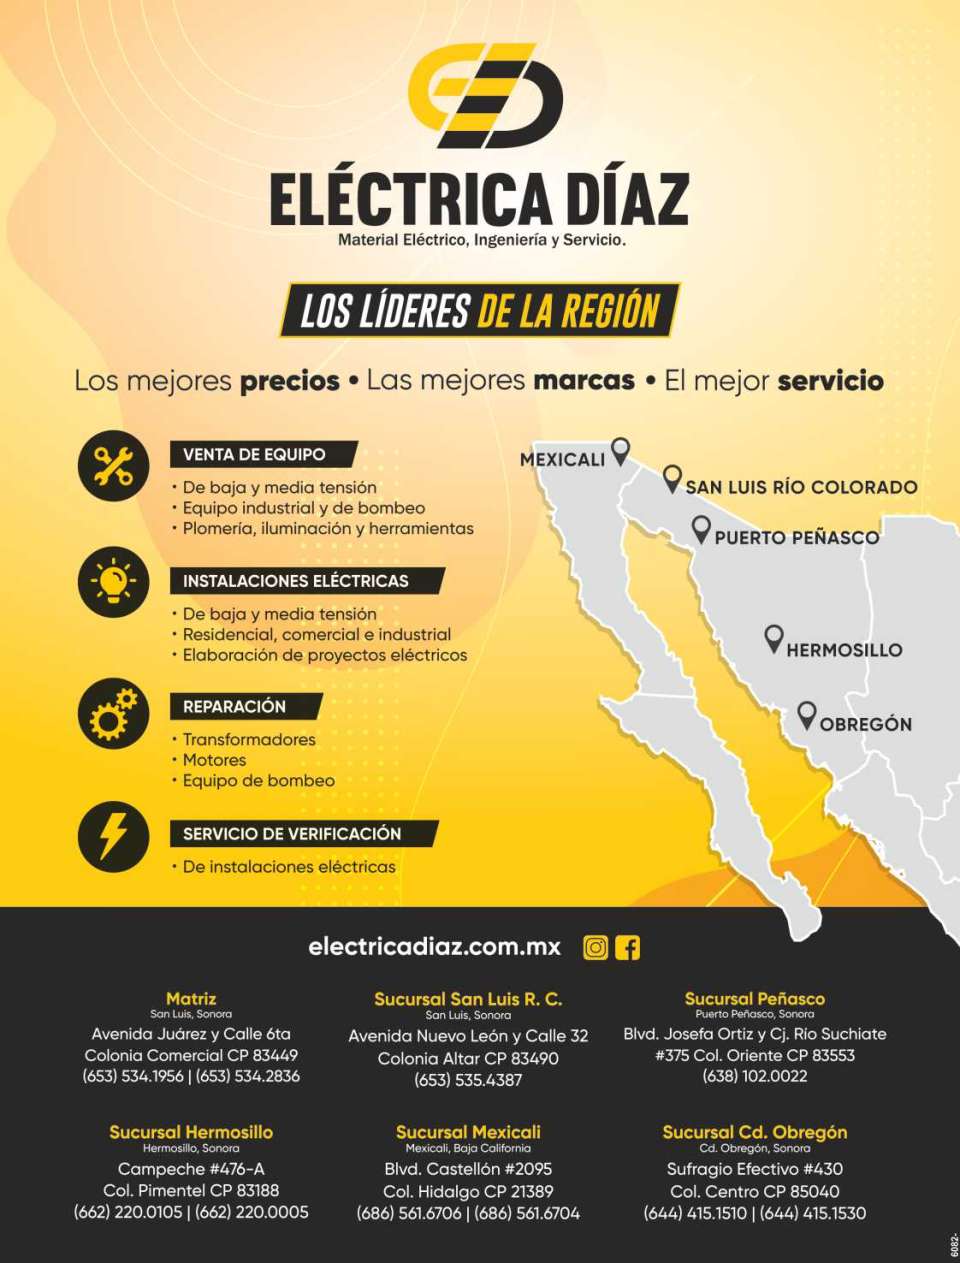 Electrica Diaz: Material electrico, Ingenieria y Servicio. Los mejores precios. Las mejores marcas. El mejor servicio. *Venta de Equipo *Instalaciones Electricas *Reparacion *Servicio de Verificacion